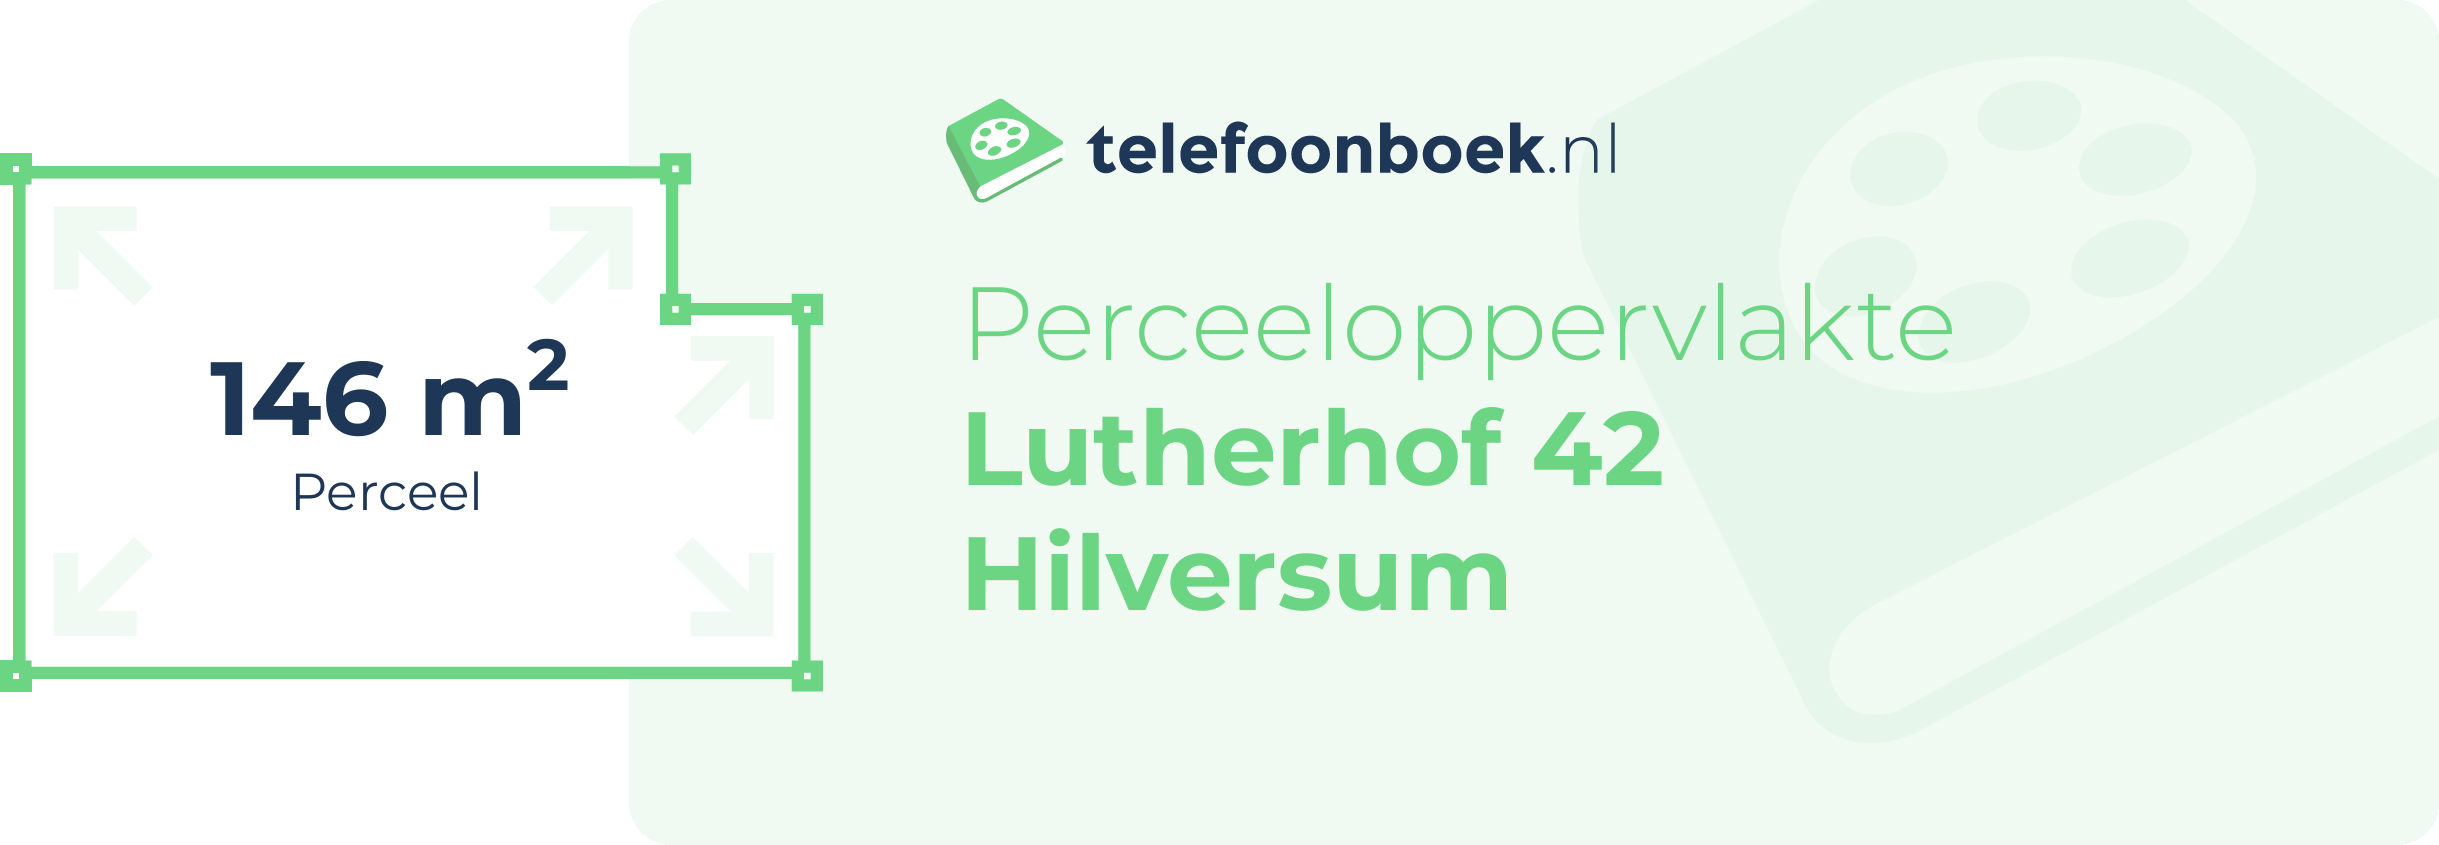 Perceeloppervlakte Lutherhof 42 Hilversum